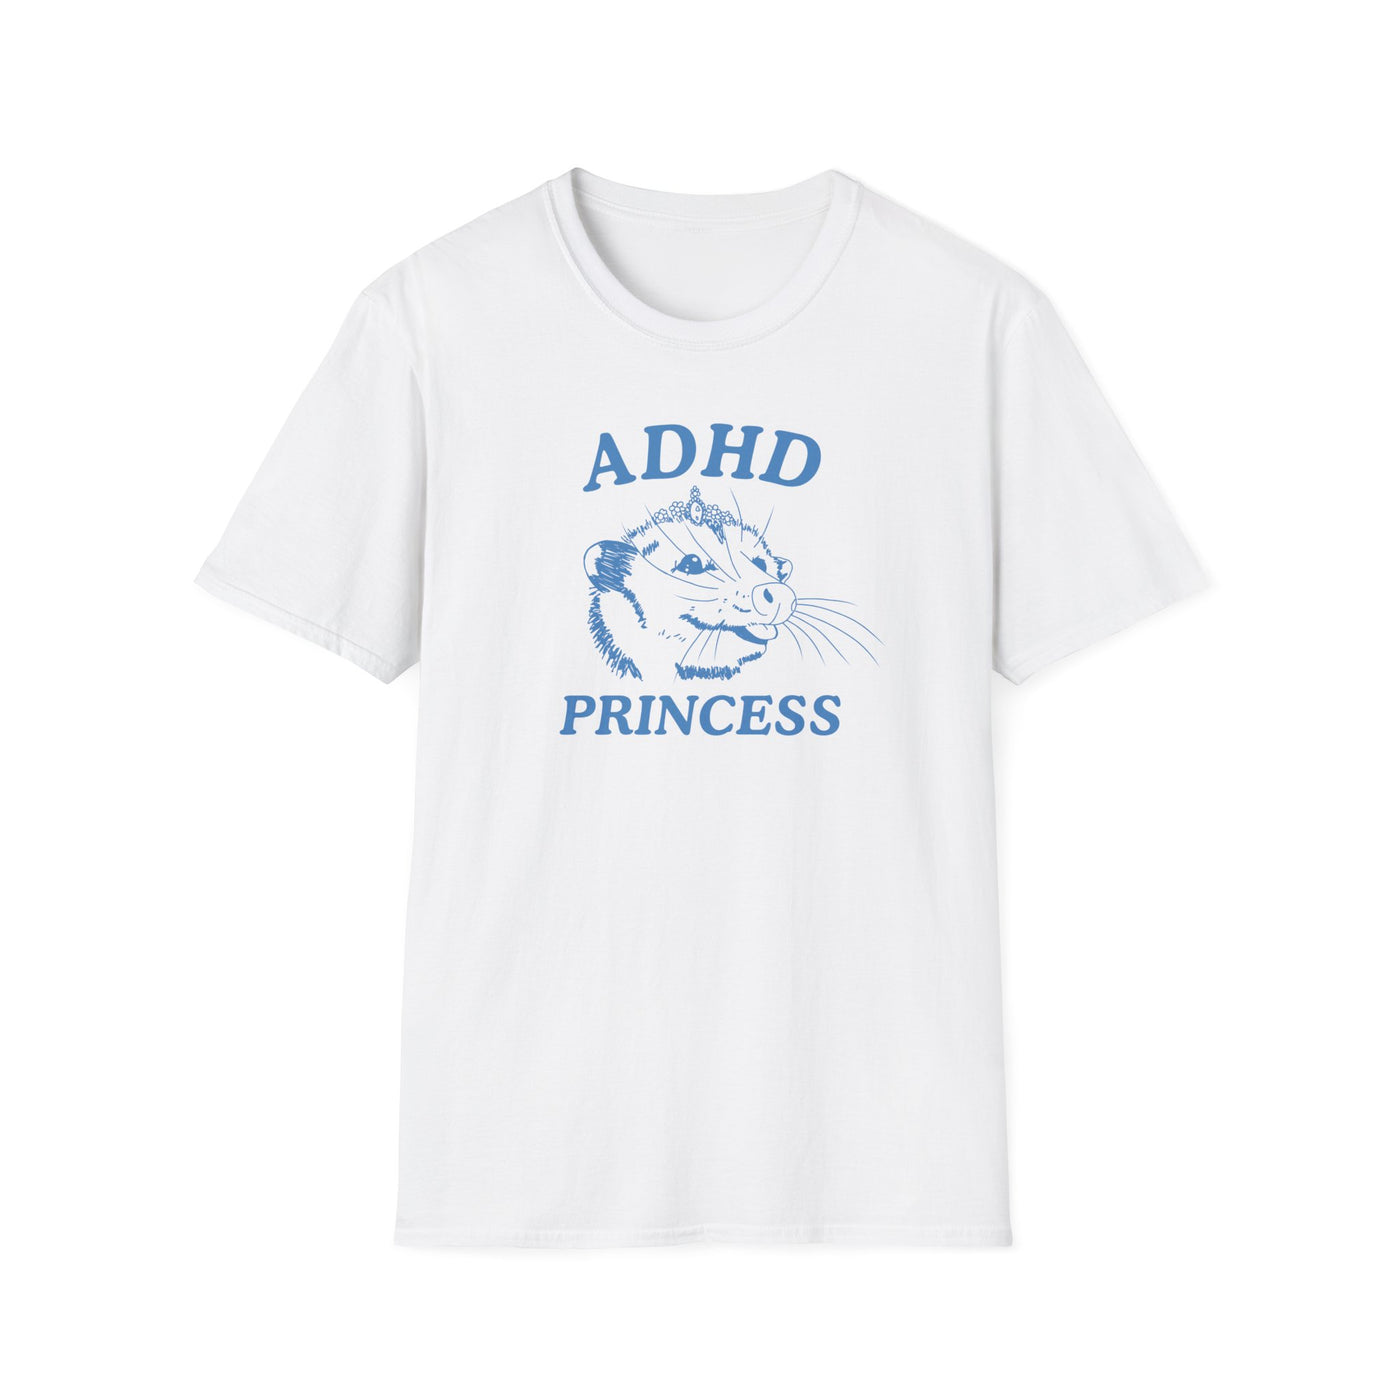 ADHD Princess